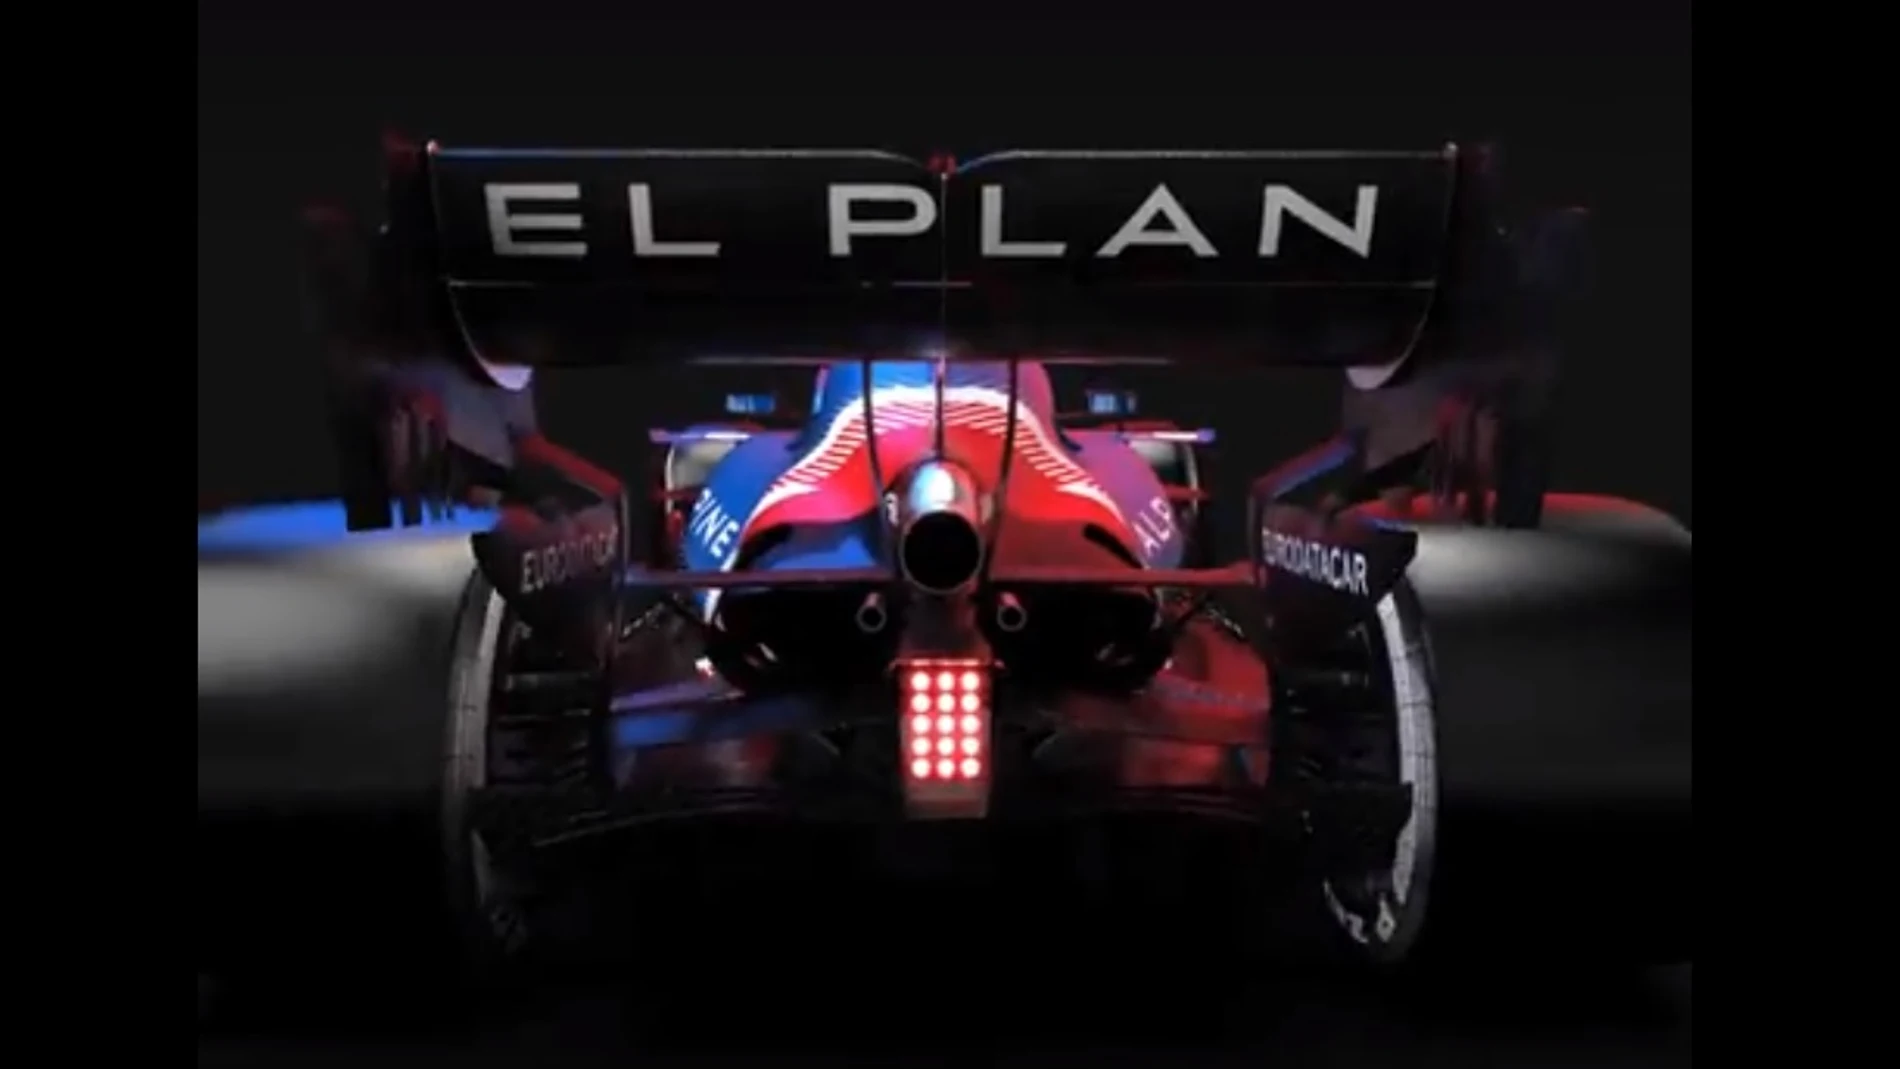 &#39;El Plan&#39; de Fernando Alonso alcanza otra dimensión: ¿Lucirá Alpine el lema en el alerón trasero?